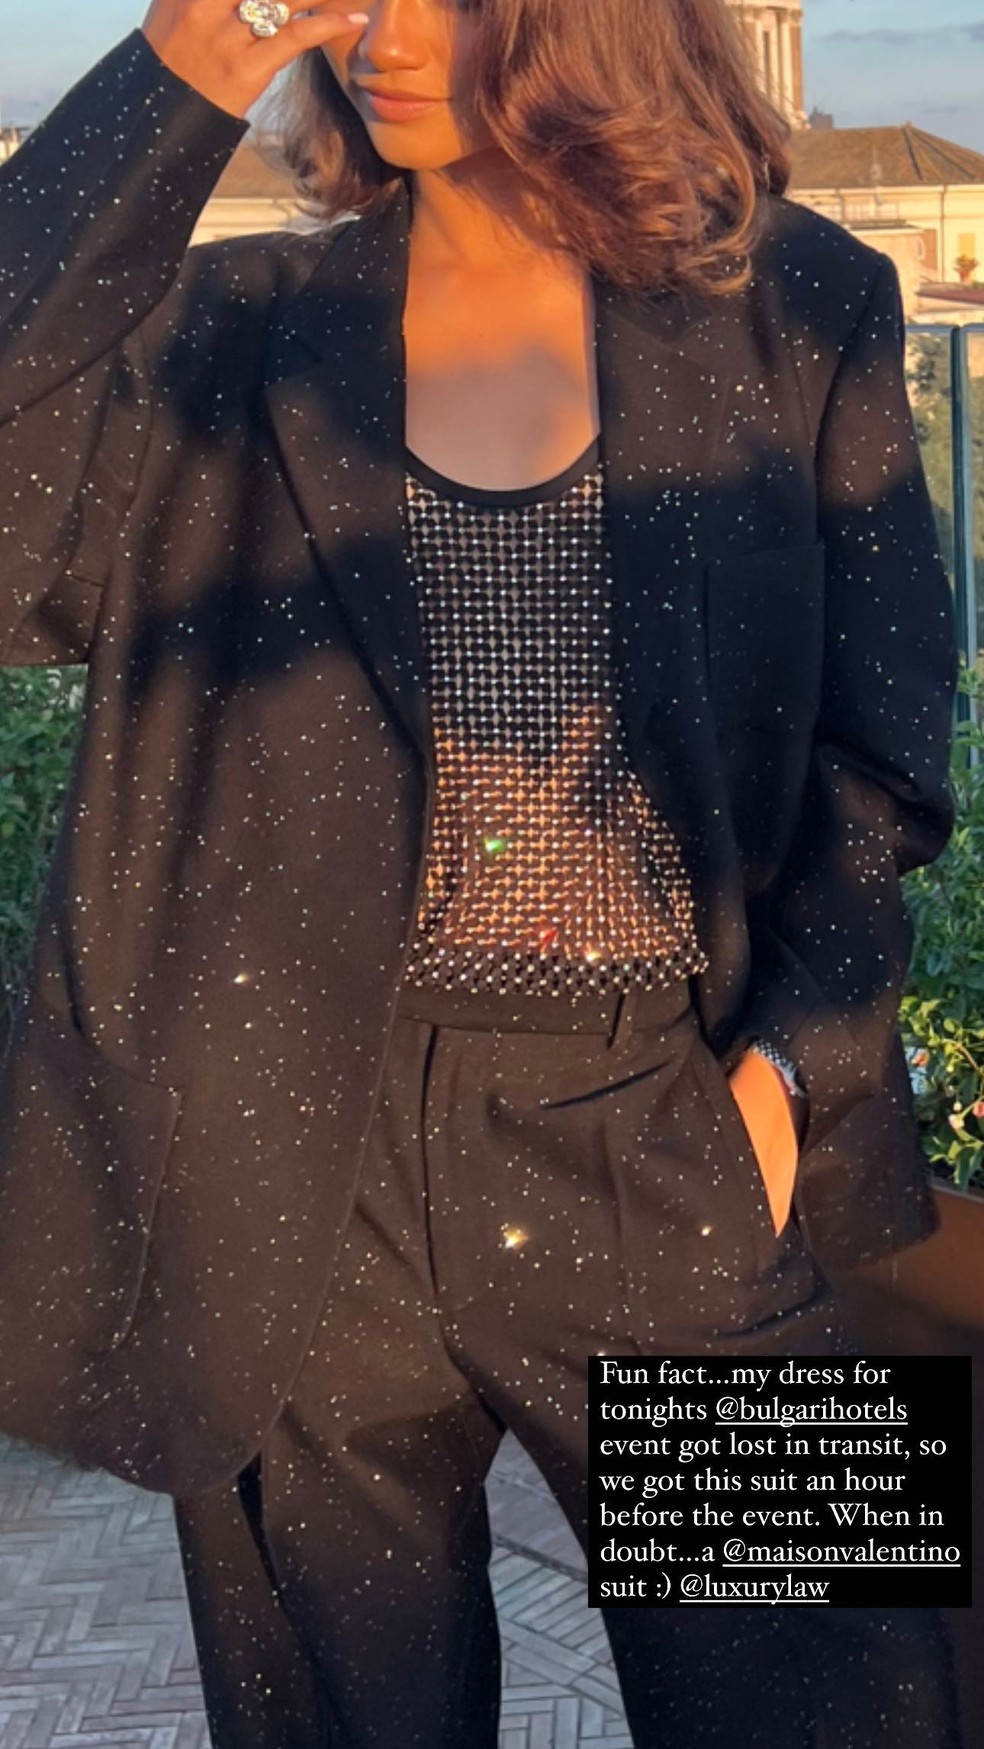 Zendaya com seu look improvisado no evento em Roma — Foto: Reprodução/Instagram